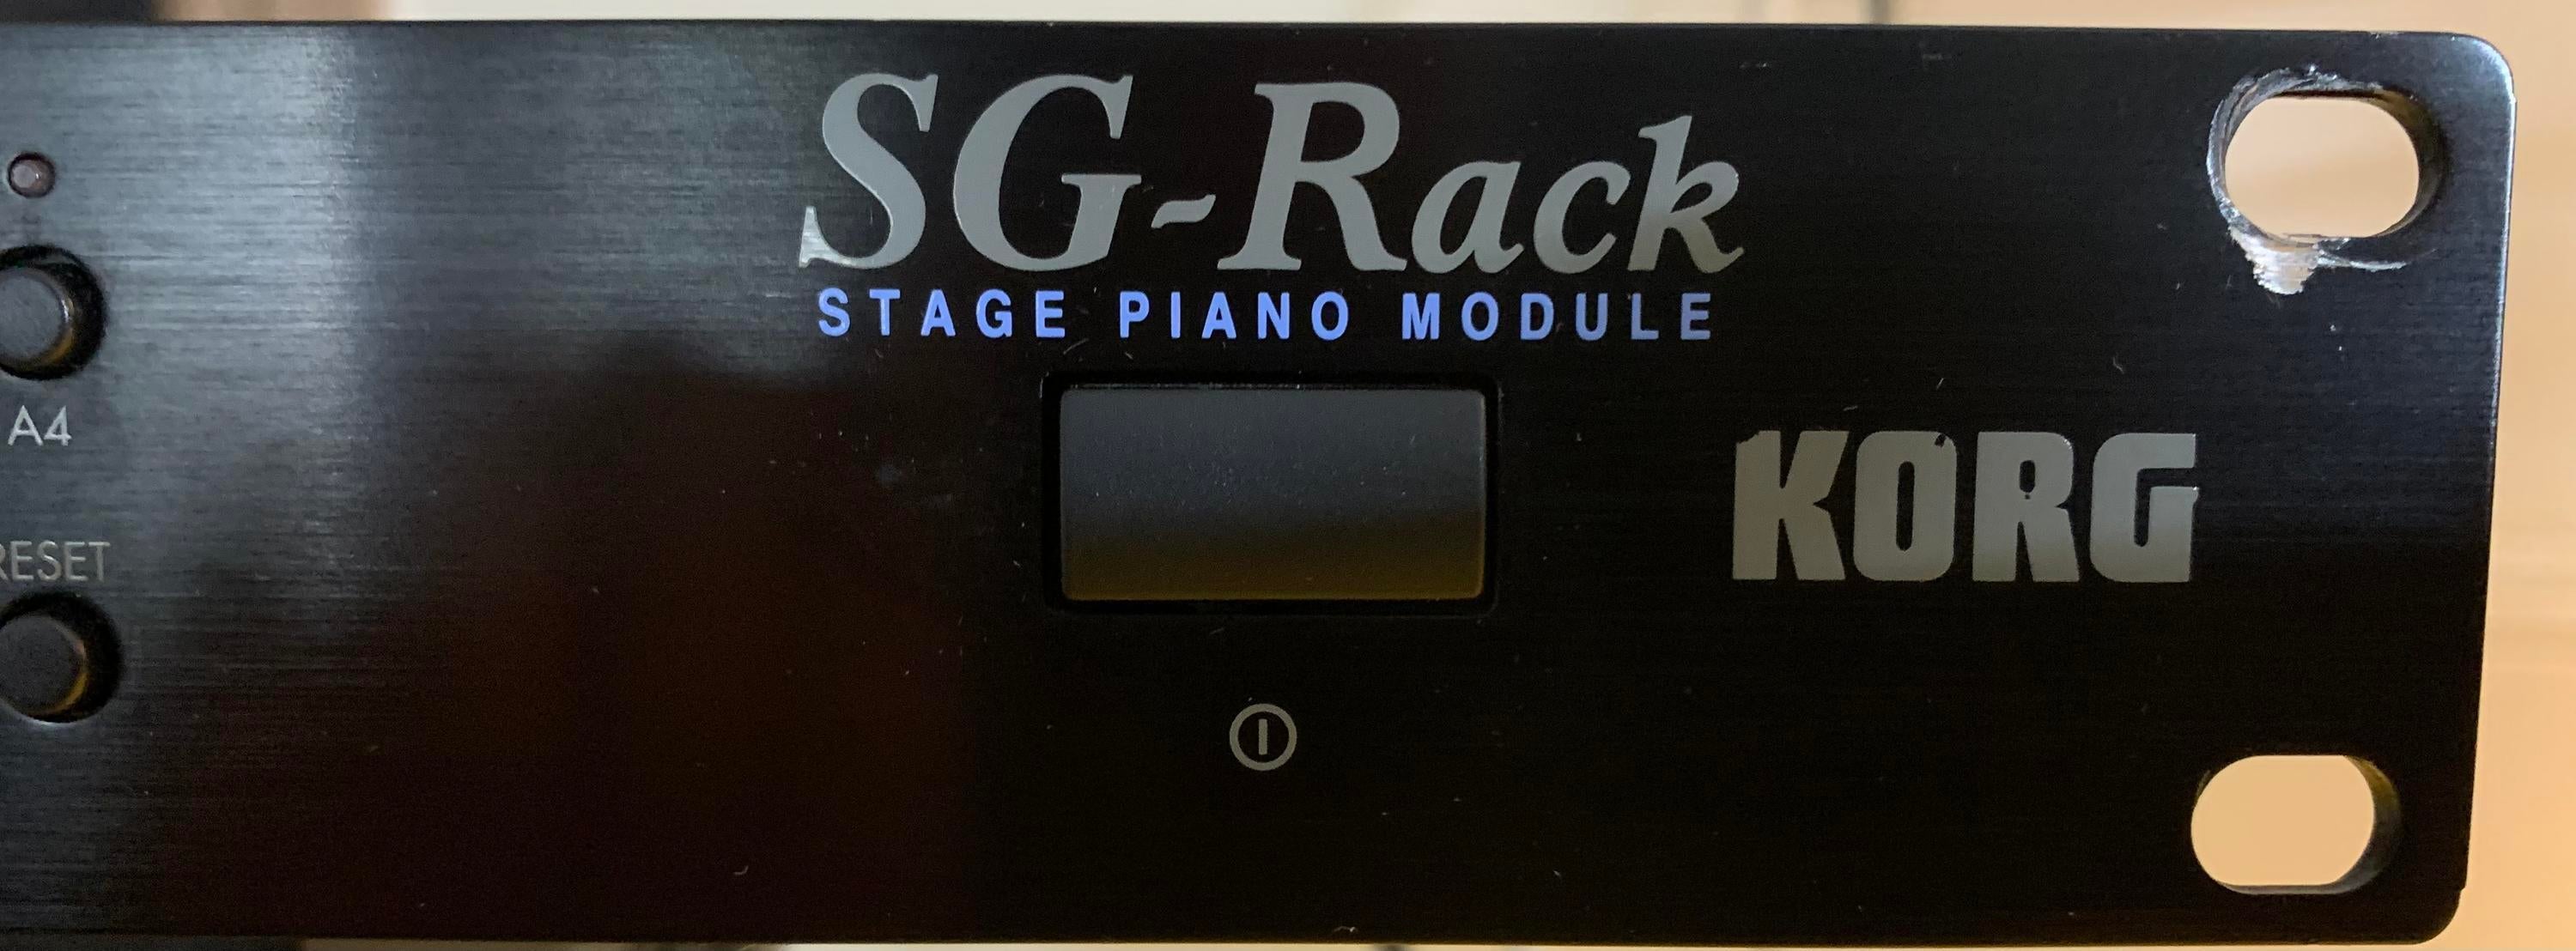 【在庫最安値】KORG SG-Rack STAGE PIANO MODULE 音源モジュール